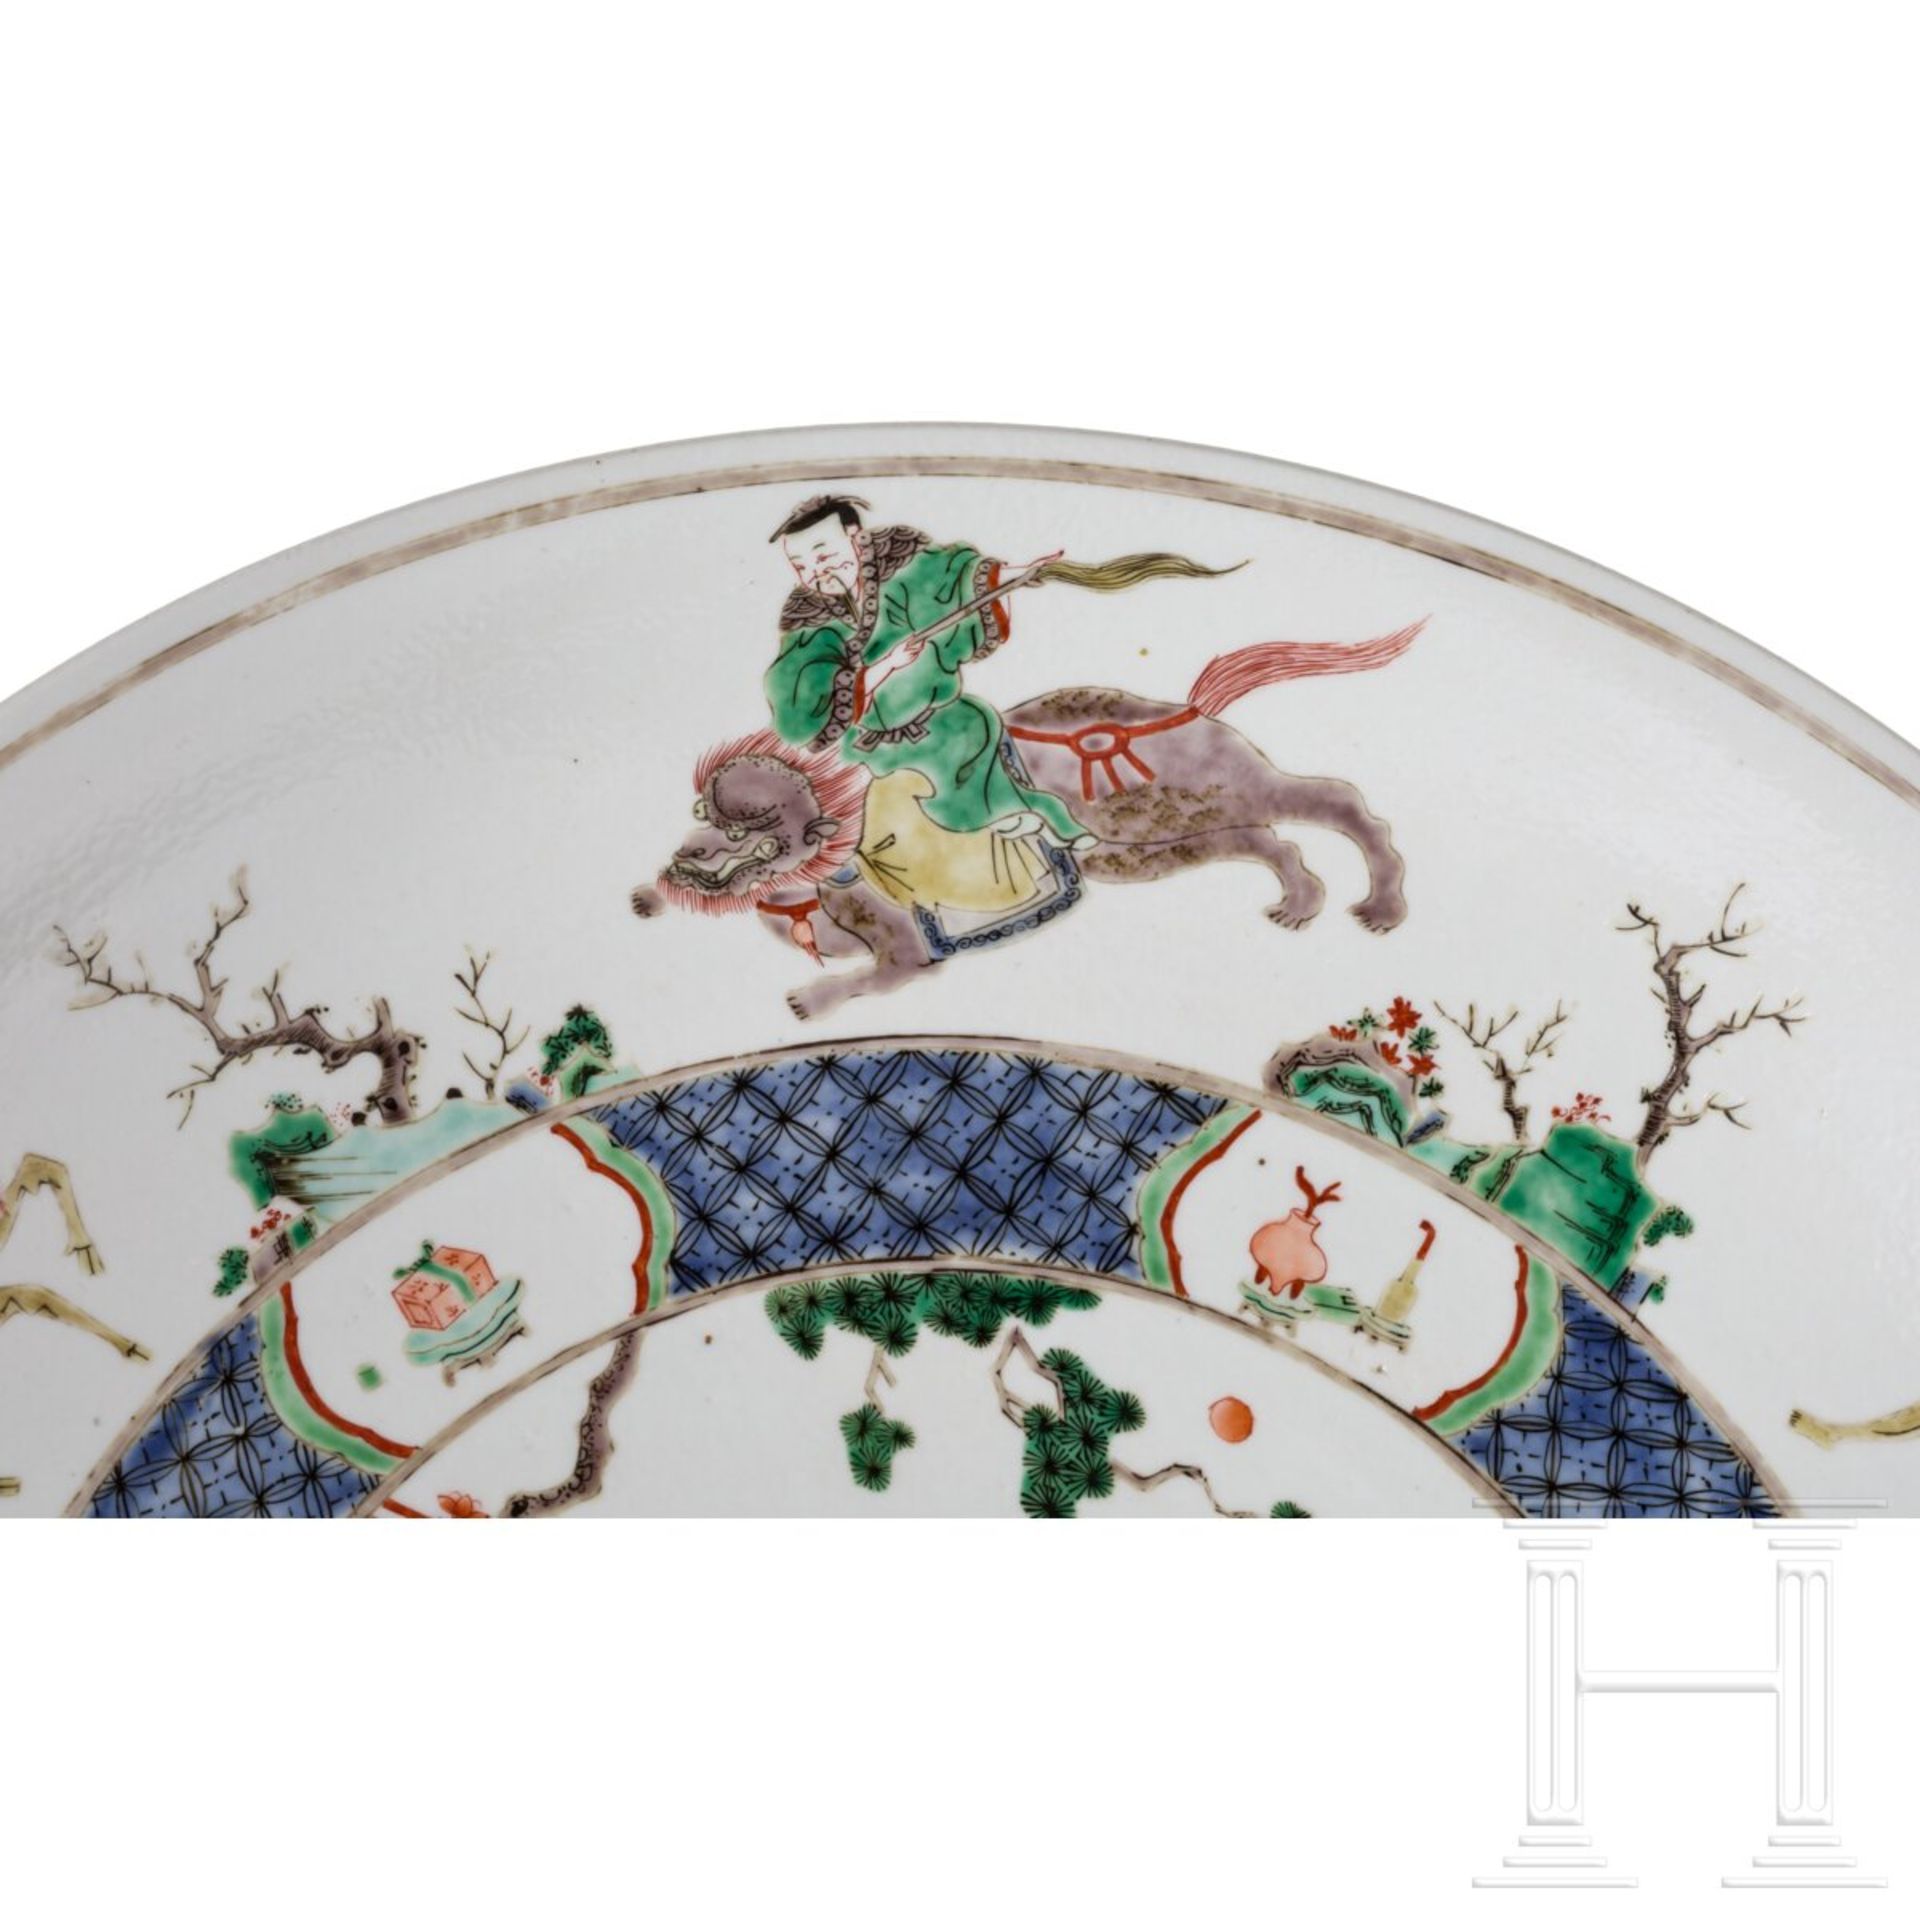 Zwei große Famille-verte-Teller mit figürlichem Dekor, China, wohl Kangxi-Periode (18. Jhdt.) - Image 6 of 40